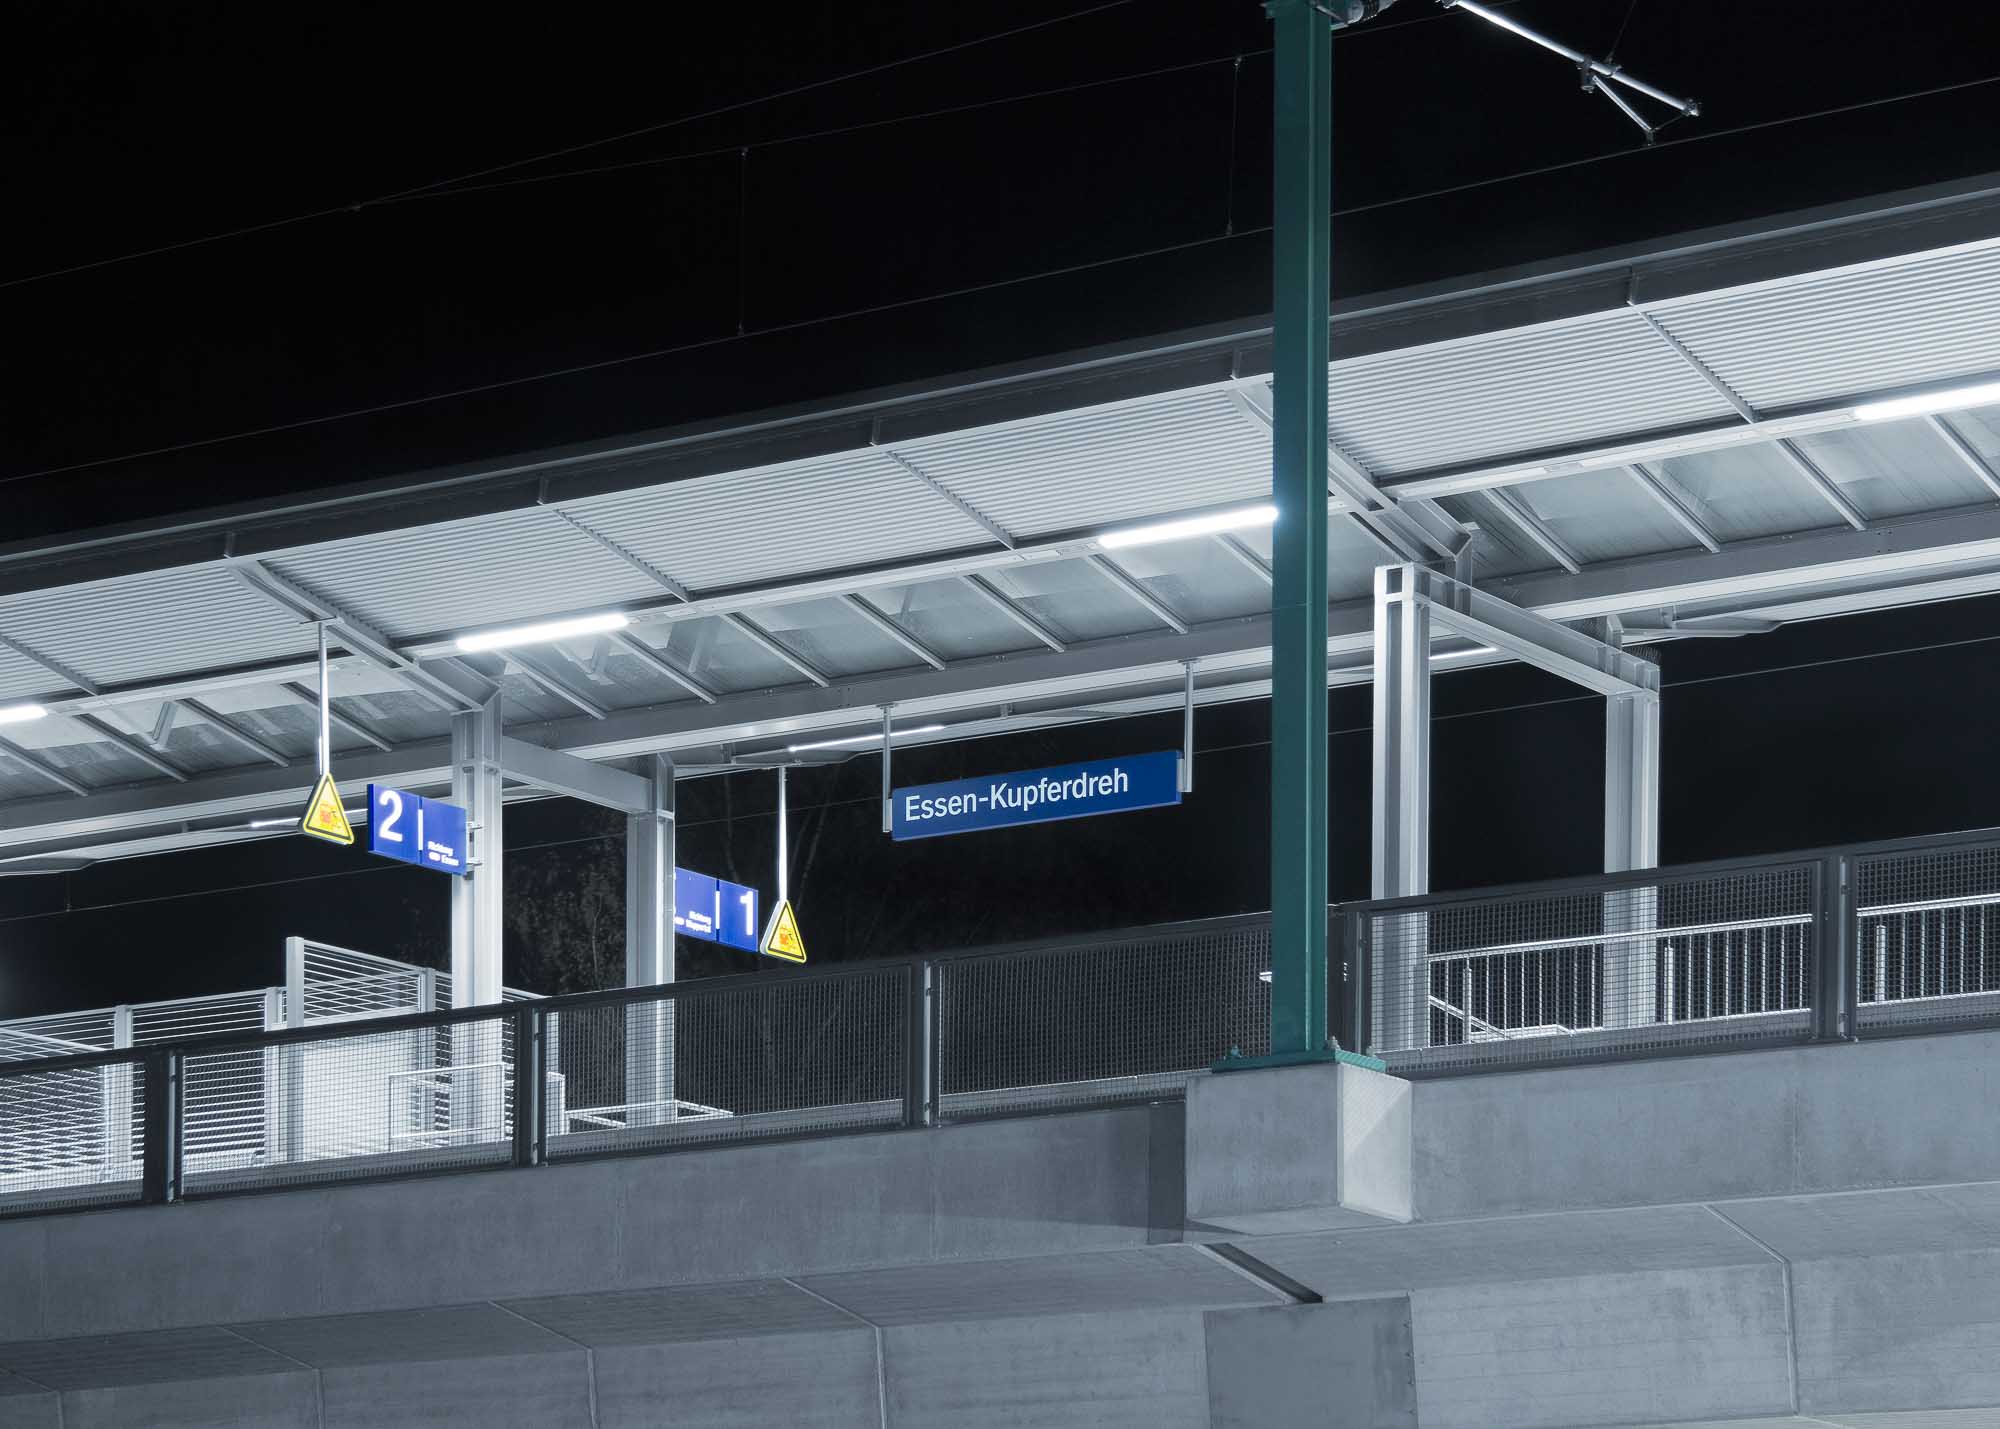 Bahnhof-Kupferdreh unter Neonlicht mit viel Beton